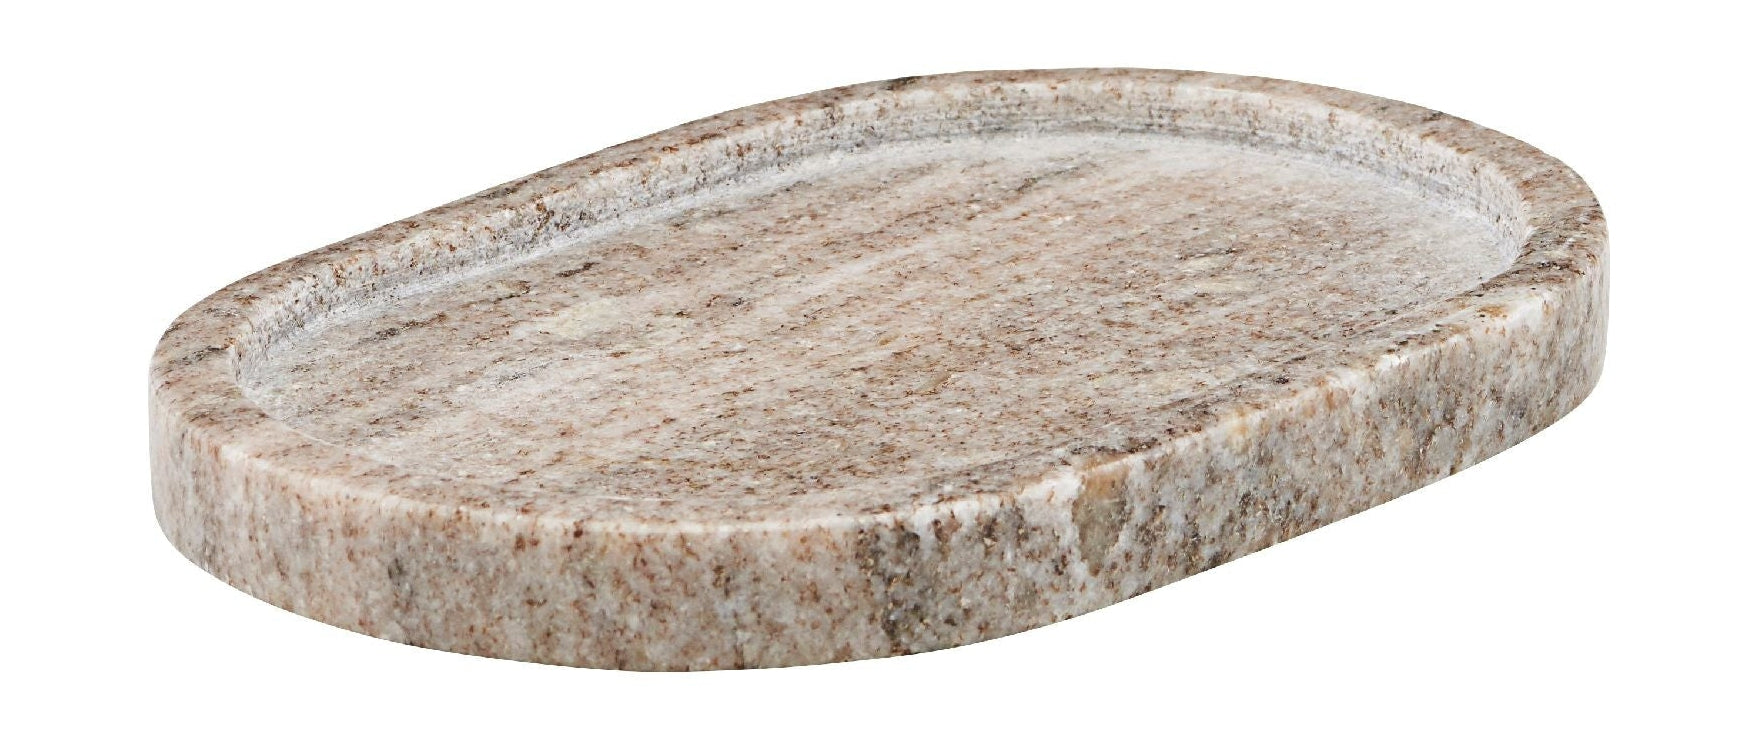 Meraki Marble Tray leštěný ovál 19,5x12,5, béžový